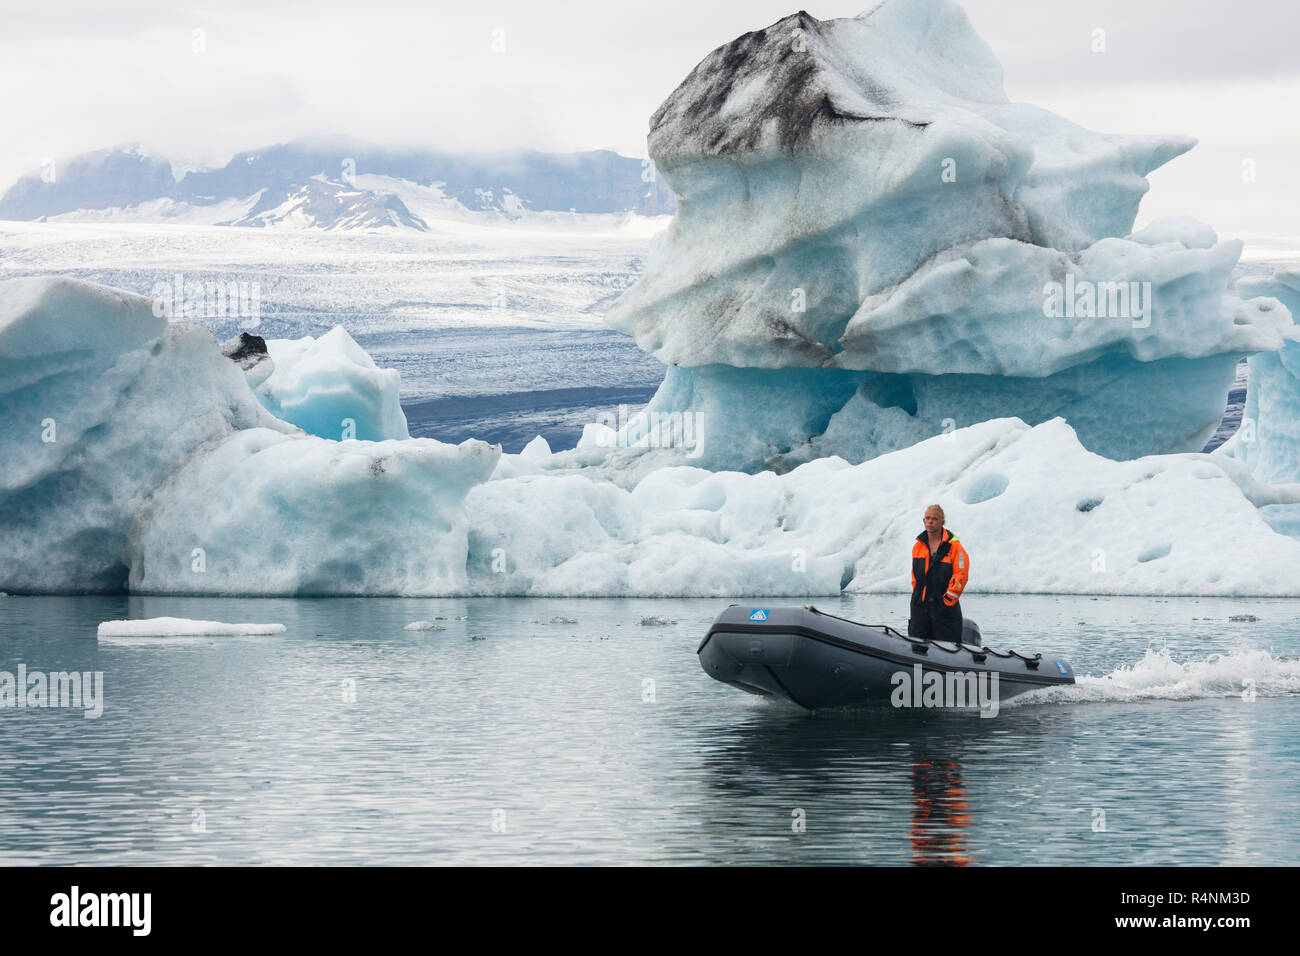 La Laguna glaciar Jokulsarlon, en el sureste de Islandia es uno de los destinos turísticos más emblemáticos. La laguna se sitúa a la cabeza del Glaciar Breidamerkurjokull y continúa creciendo en tamaño a medida que el glaciar se derrite. El lago, el más profundo de Islandia, ha aumentado cuatro veces su tamaño desde la década de 1970. Famoso por su ártico-como paisajes, la laguna ha aparecido en varias películas, incluyendo dos películas de James Bond (Panorama para matar y Muere otro día) y Batman Begins. Foto de stock